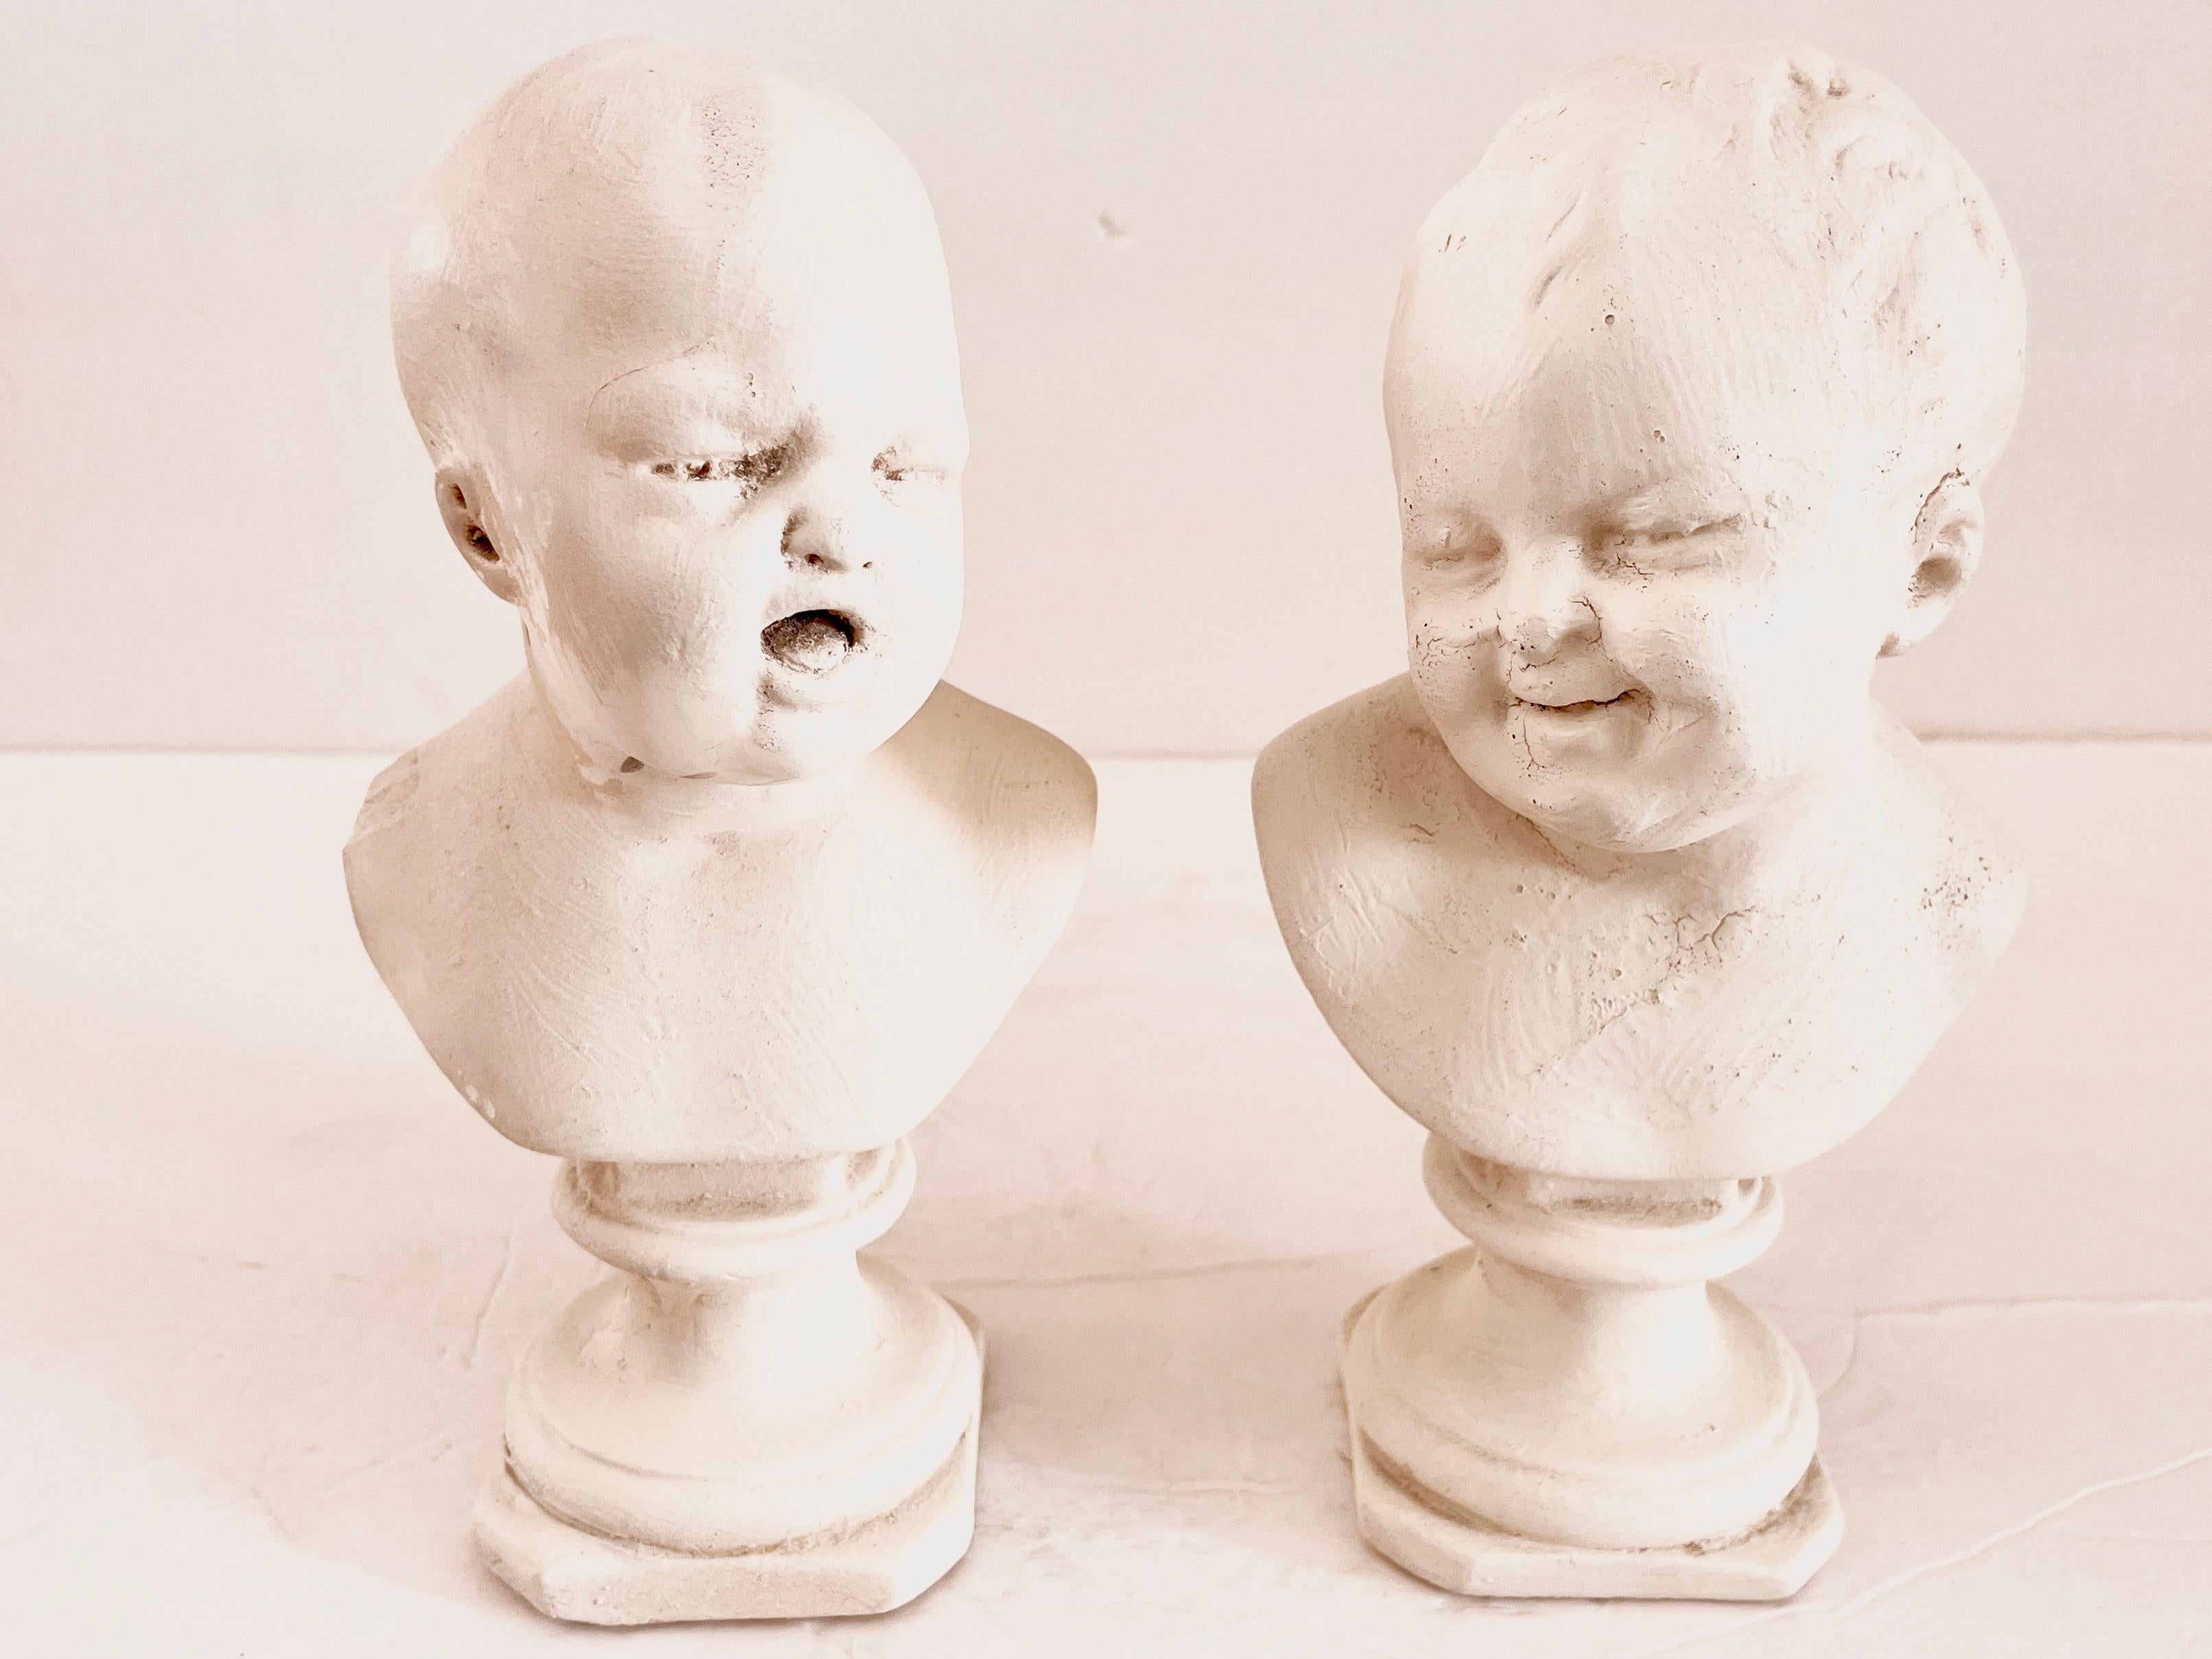 Mignonne paire de mini-bustes de bébés aux visages pleurant et riant par Houdin. Ils sont de petite taille et réalisés en plâtre. Il est très rare d'avoir la paire.